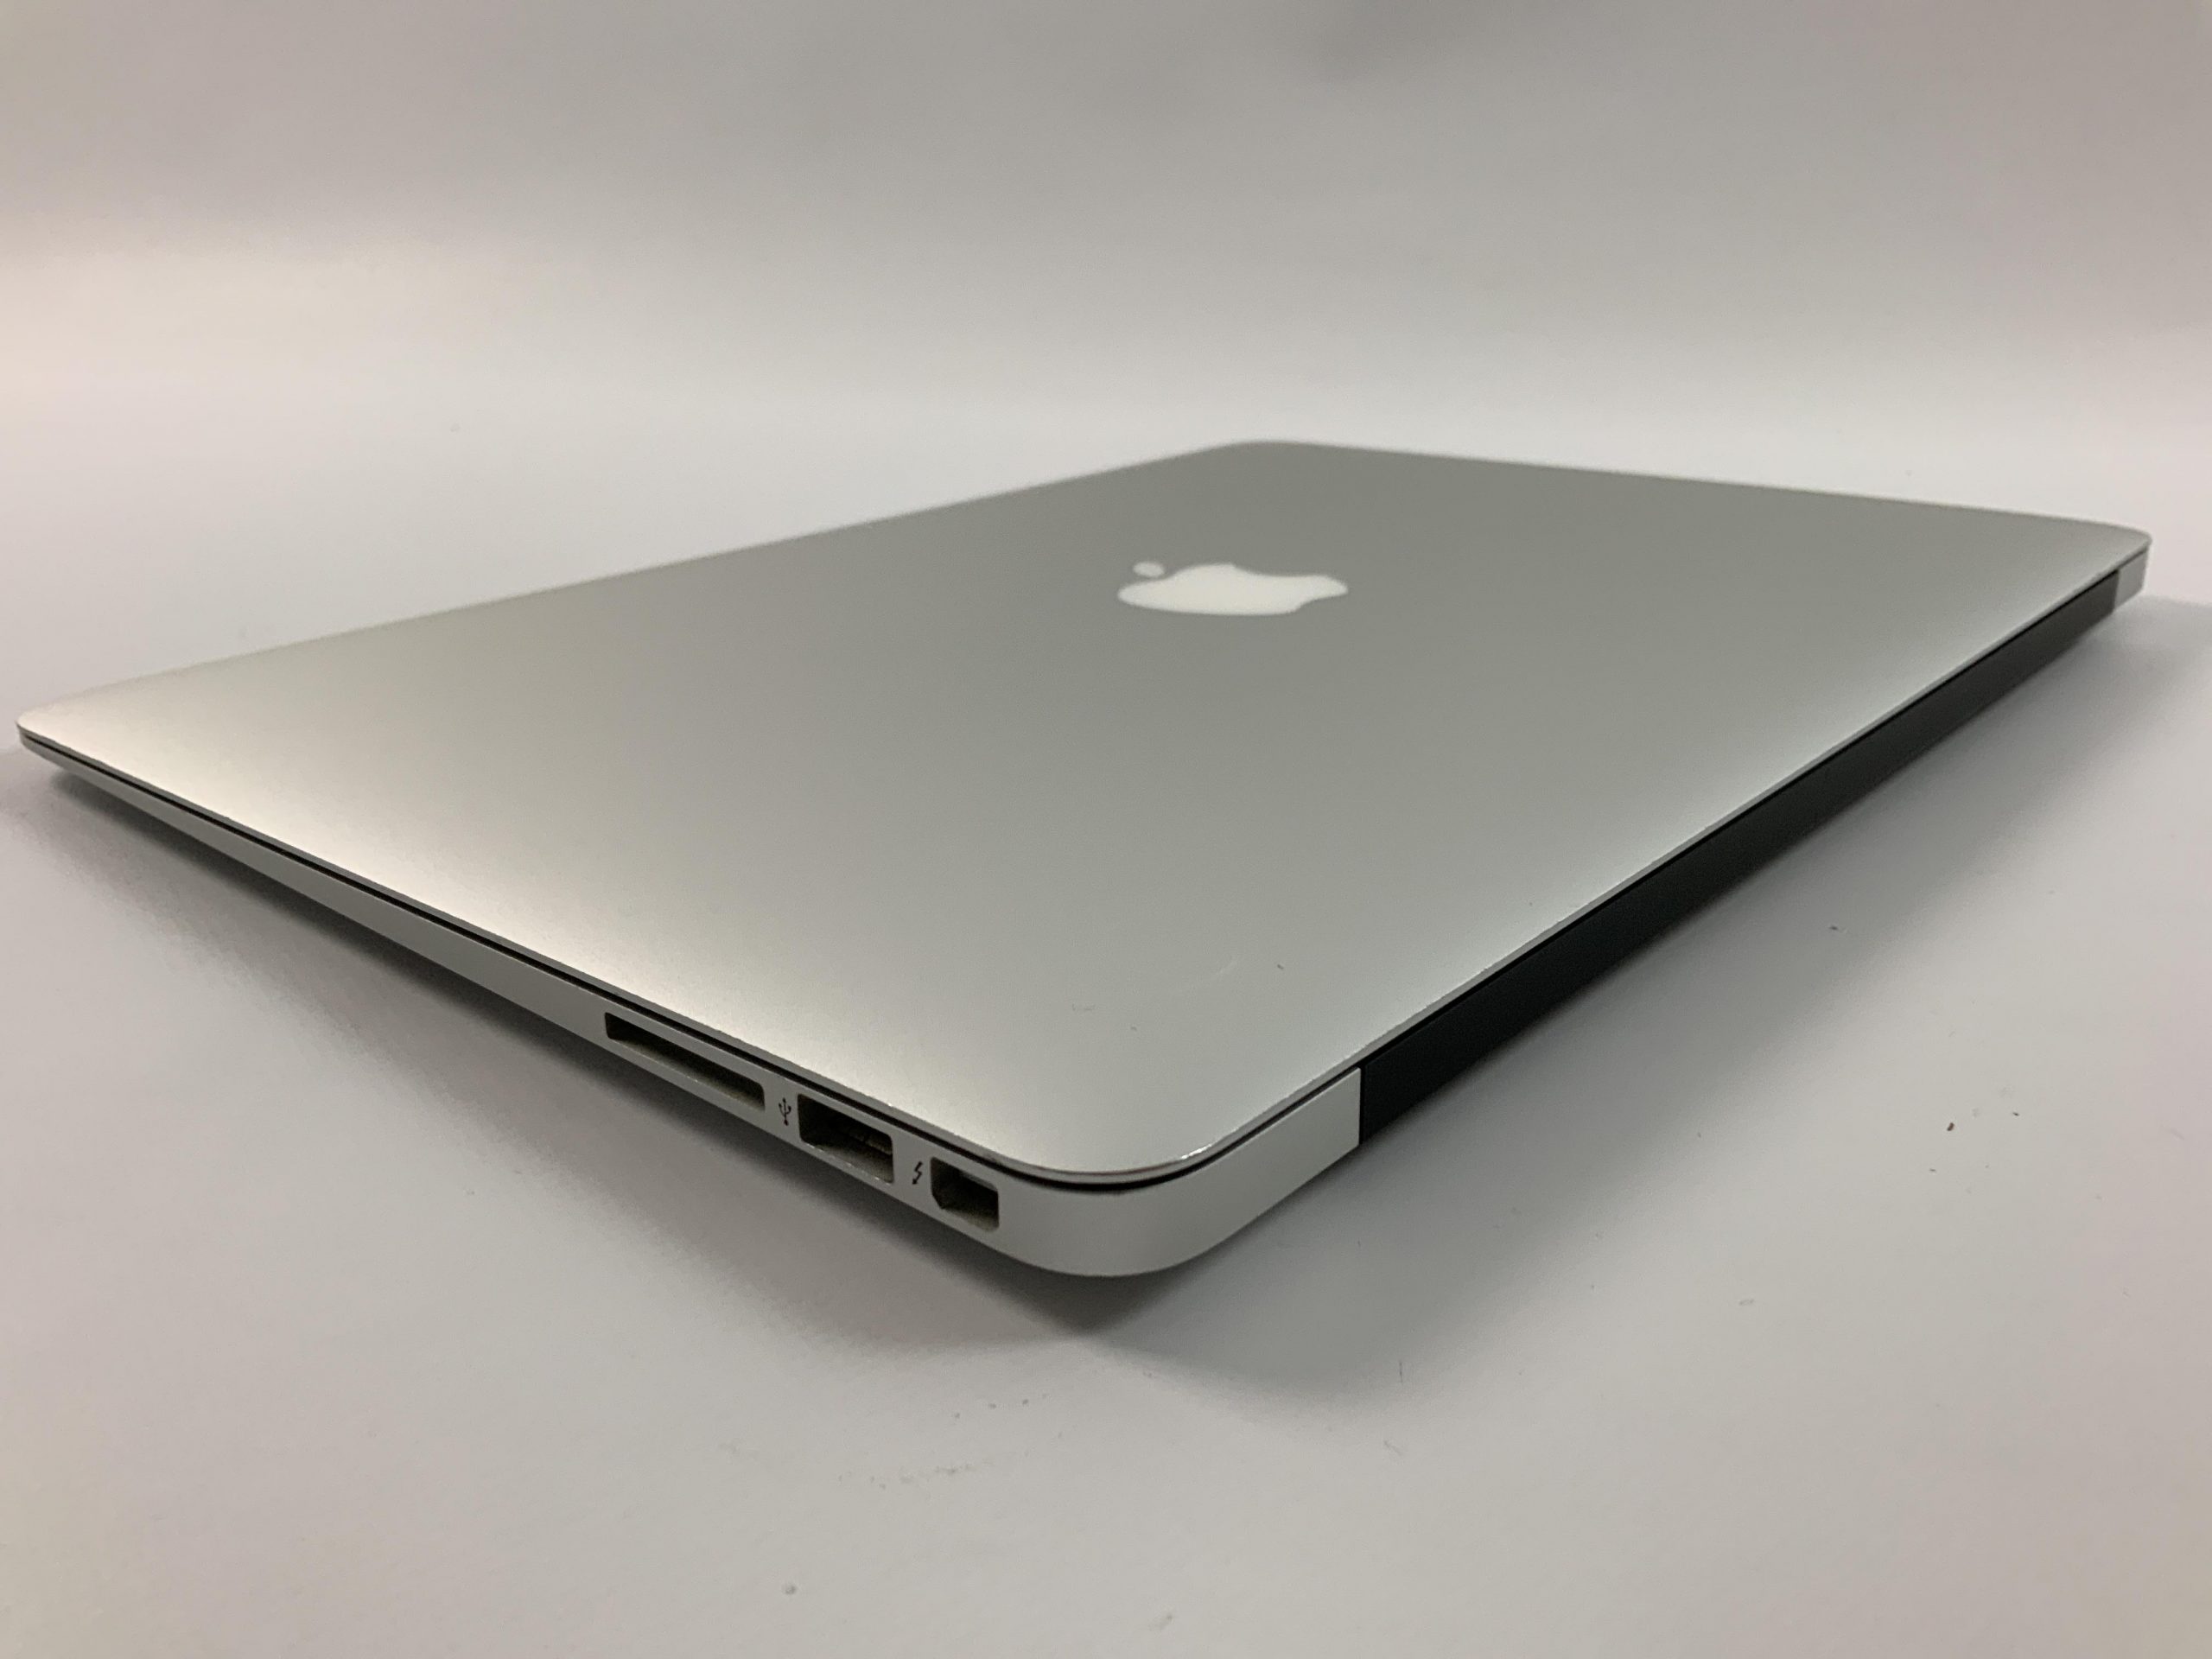 MacBook Air 13" Mid 2017 (Intel Core i5 1.8 GHz 8 GB RAM 256 GB SSD), Intel Core i5 1.8 GHz, 8 GB RAM, 256 GB SSD, image 3